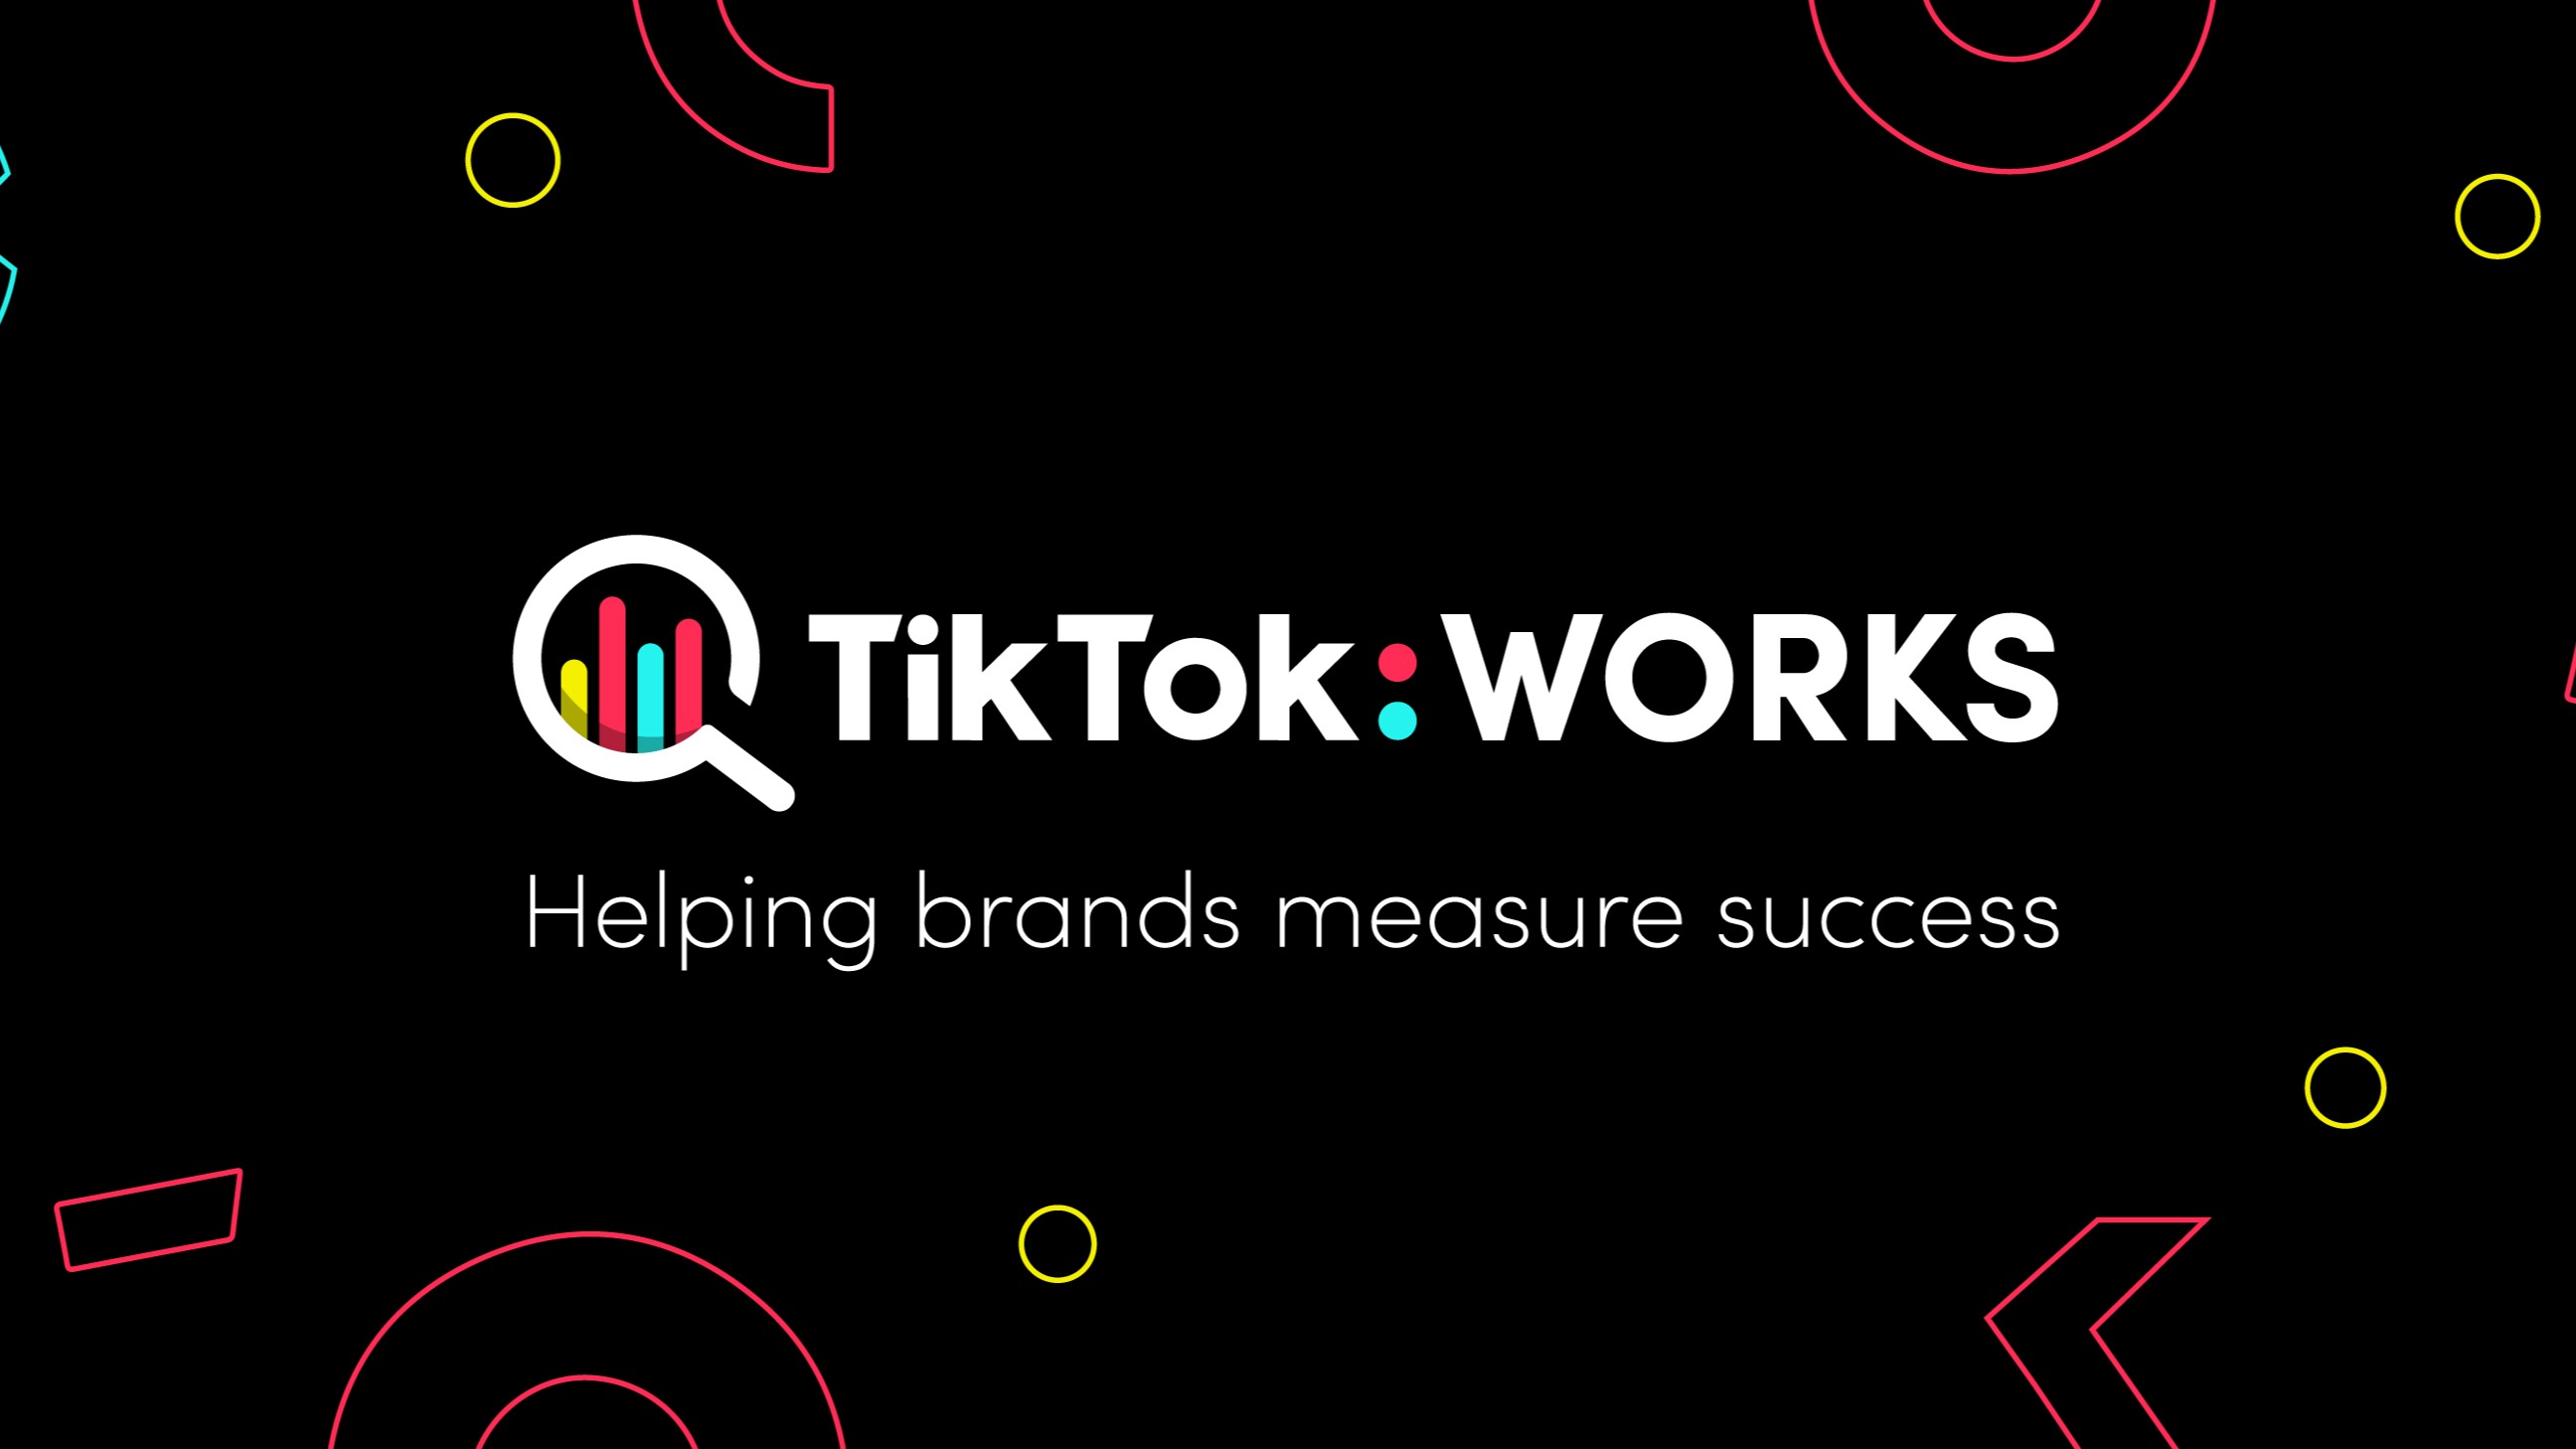 TikTok Works là ứng dụng giải trí đầy thú vị và hấp dẫn cho giới trẻ. Nếu bạn đang muốn thử nghiệm thế giới các video vui nhộn, những đoạn nhạc ngắn tuyệt vời và rất nhiều bộ lọc tuyệt đẹp, hãy tải ứng dụng ngay hôm nay và khám phá thế giới của TikTok.